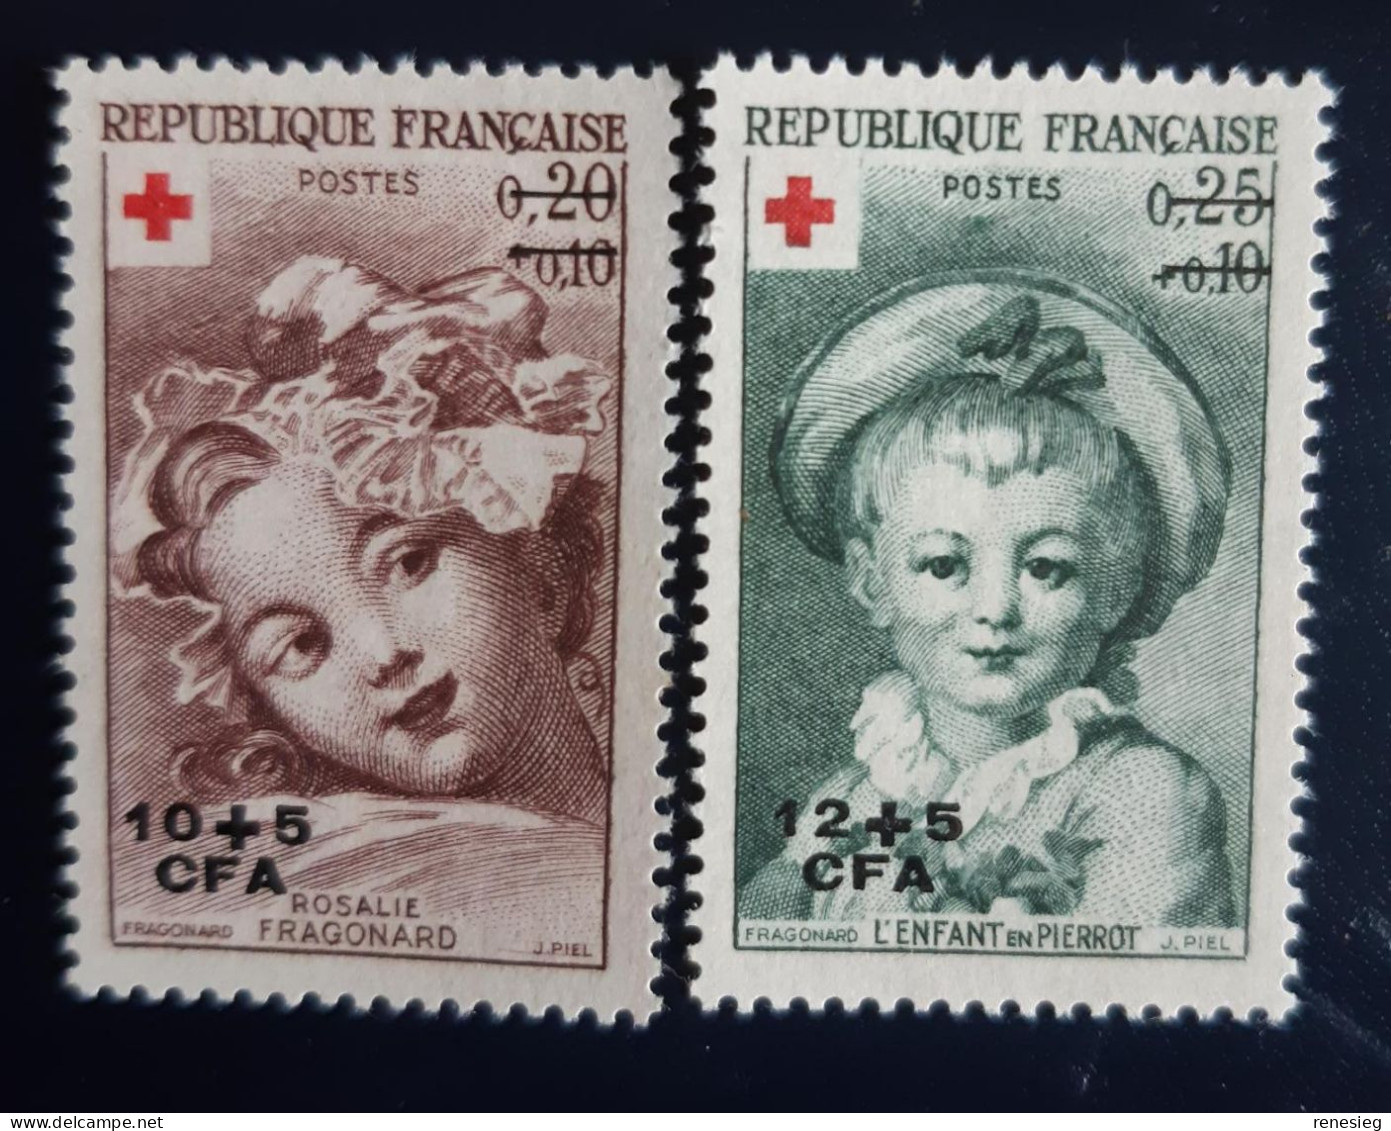 Réunion 1962 Croix-Rouge Yvert 353 & 354 MH - Ungebraucht